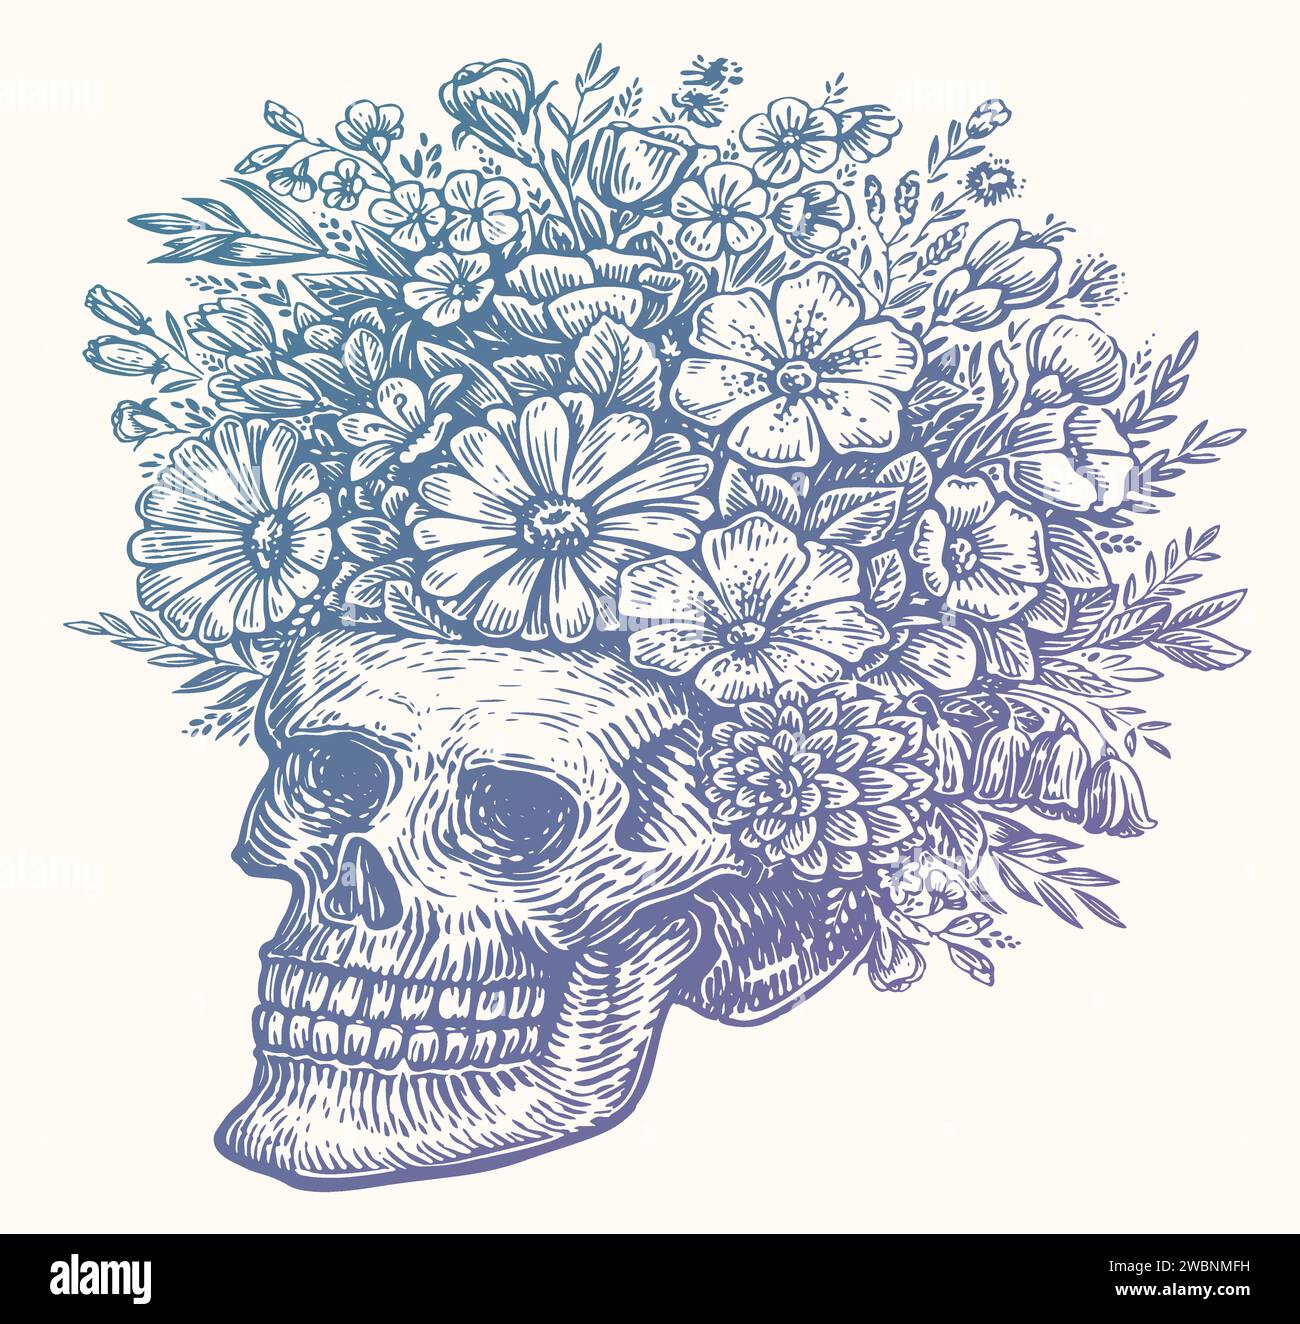 Teschio umano con fiori, disegno. Illustrazione vettoriale disegnata a mano isolata su sfondo bianco Illustrazione Vettoriale